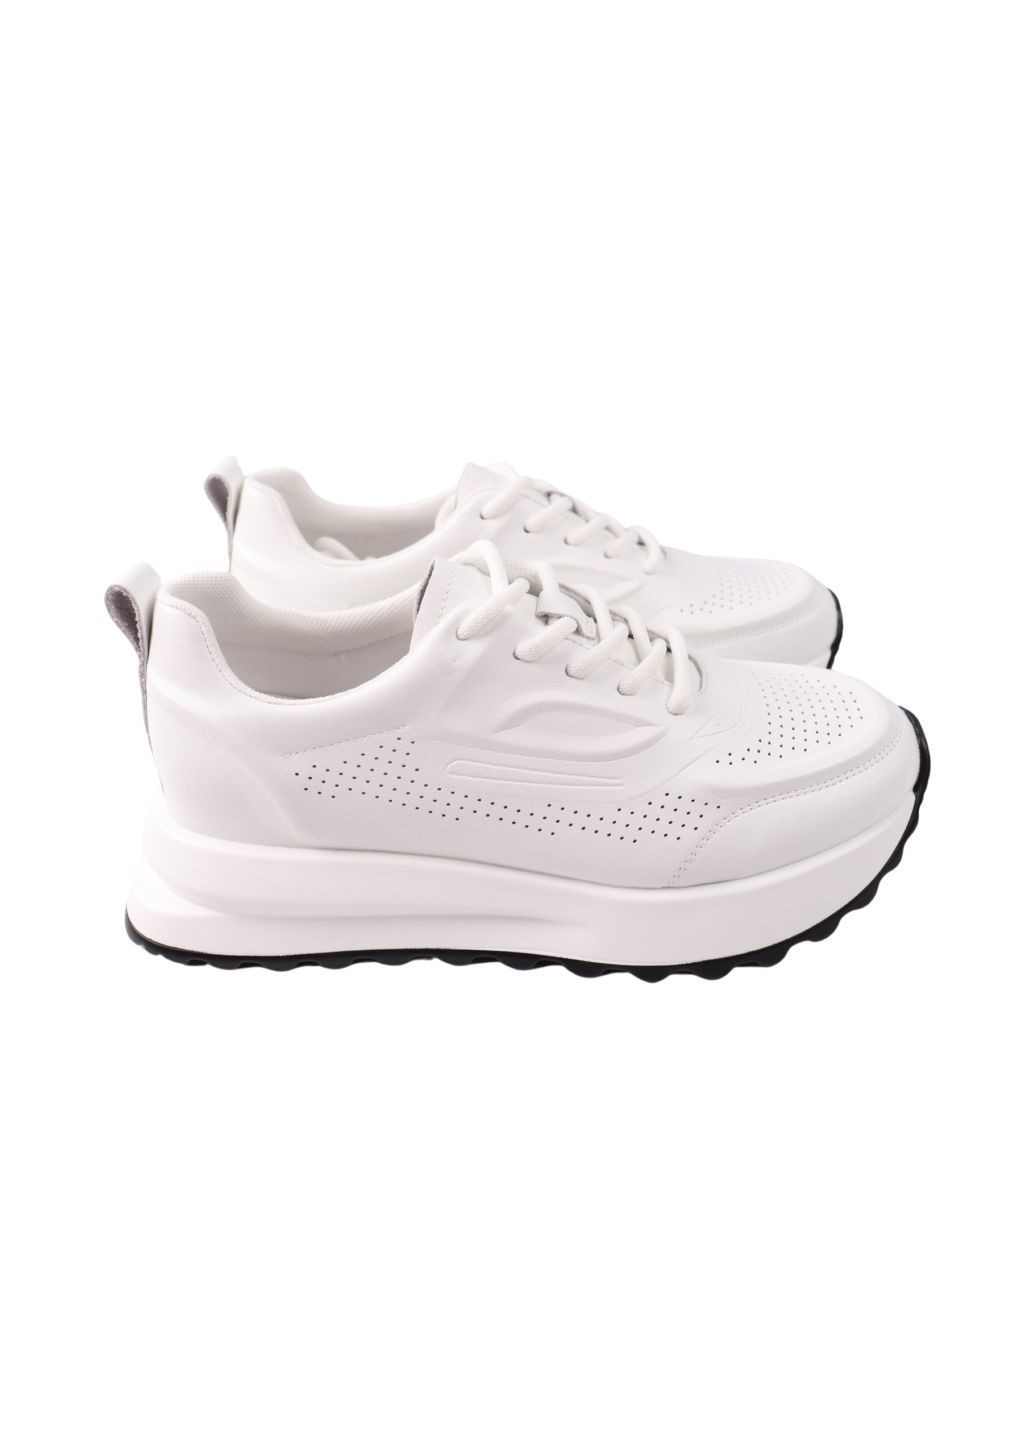 Белые кроссовки женские белые натуральная кожа FARINNI 550-24DTS